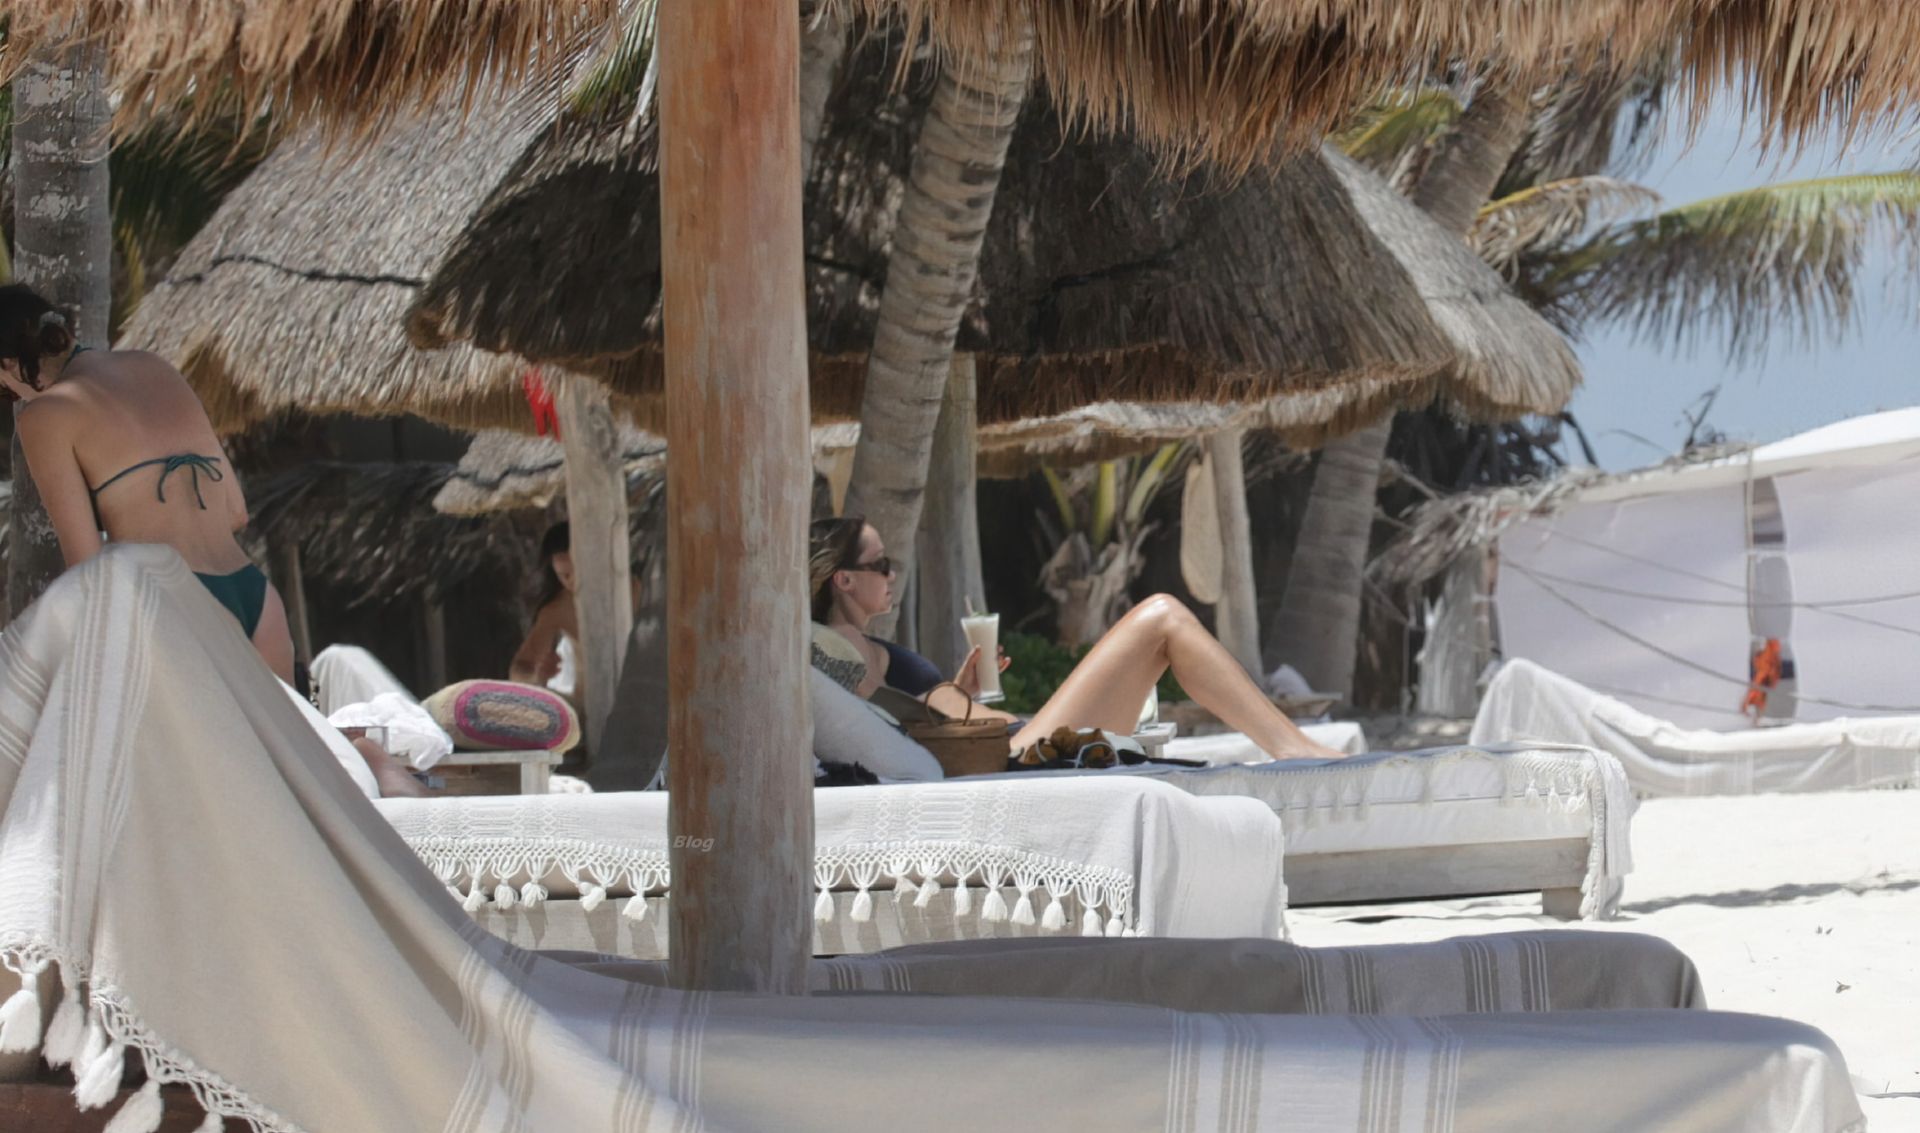 Brandi Cyrus Wears a Blac
k Bikini as She Hits the Beach in Mexico (38 Photos)